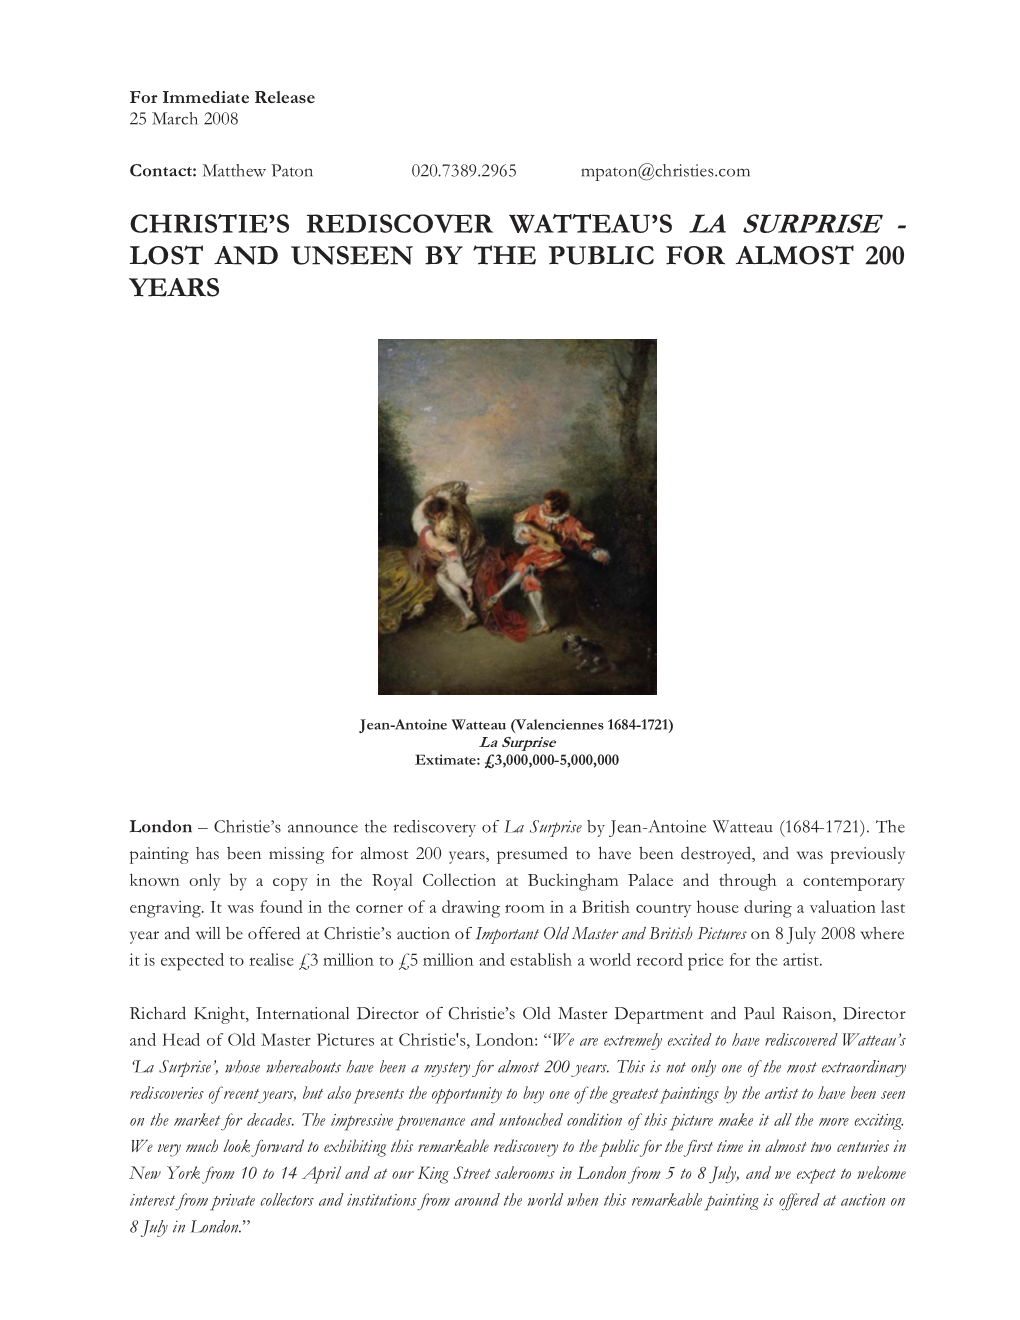 Christie's Rediscover Watteau's La Surprise